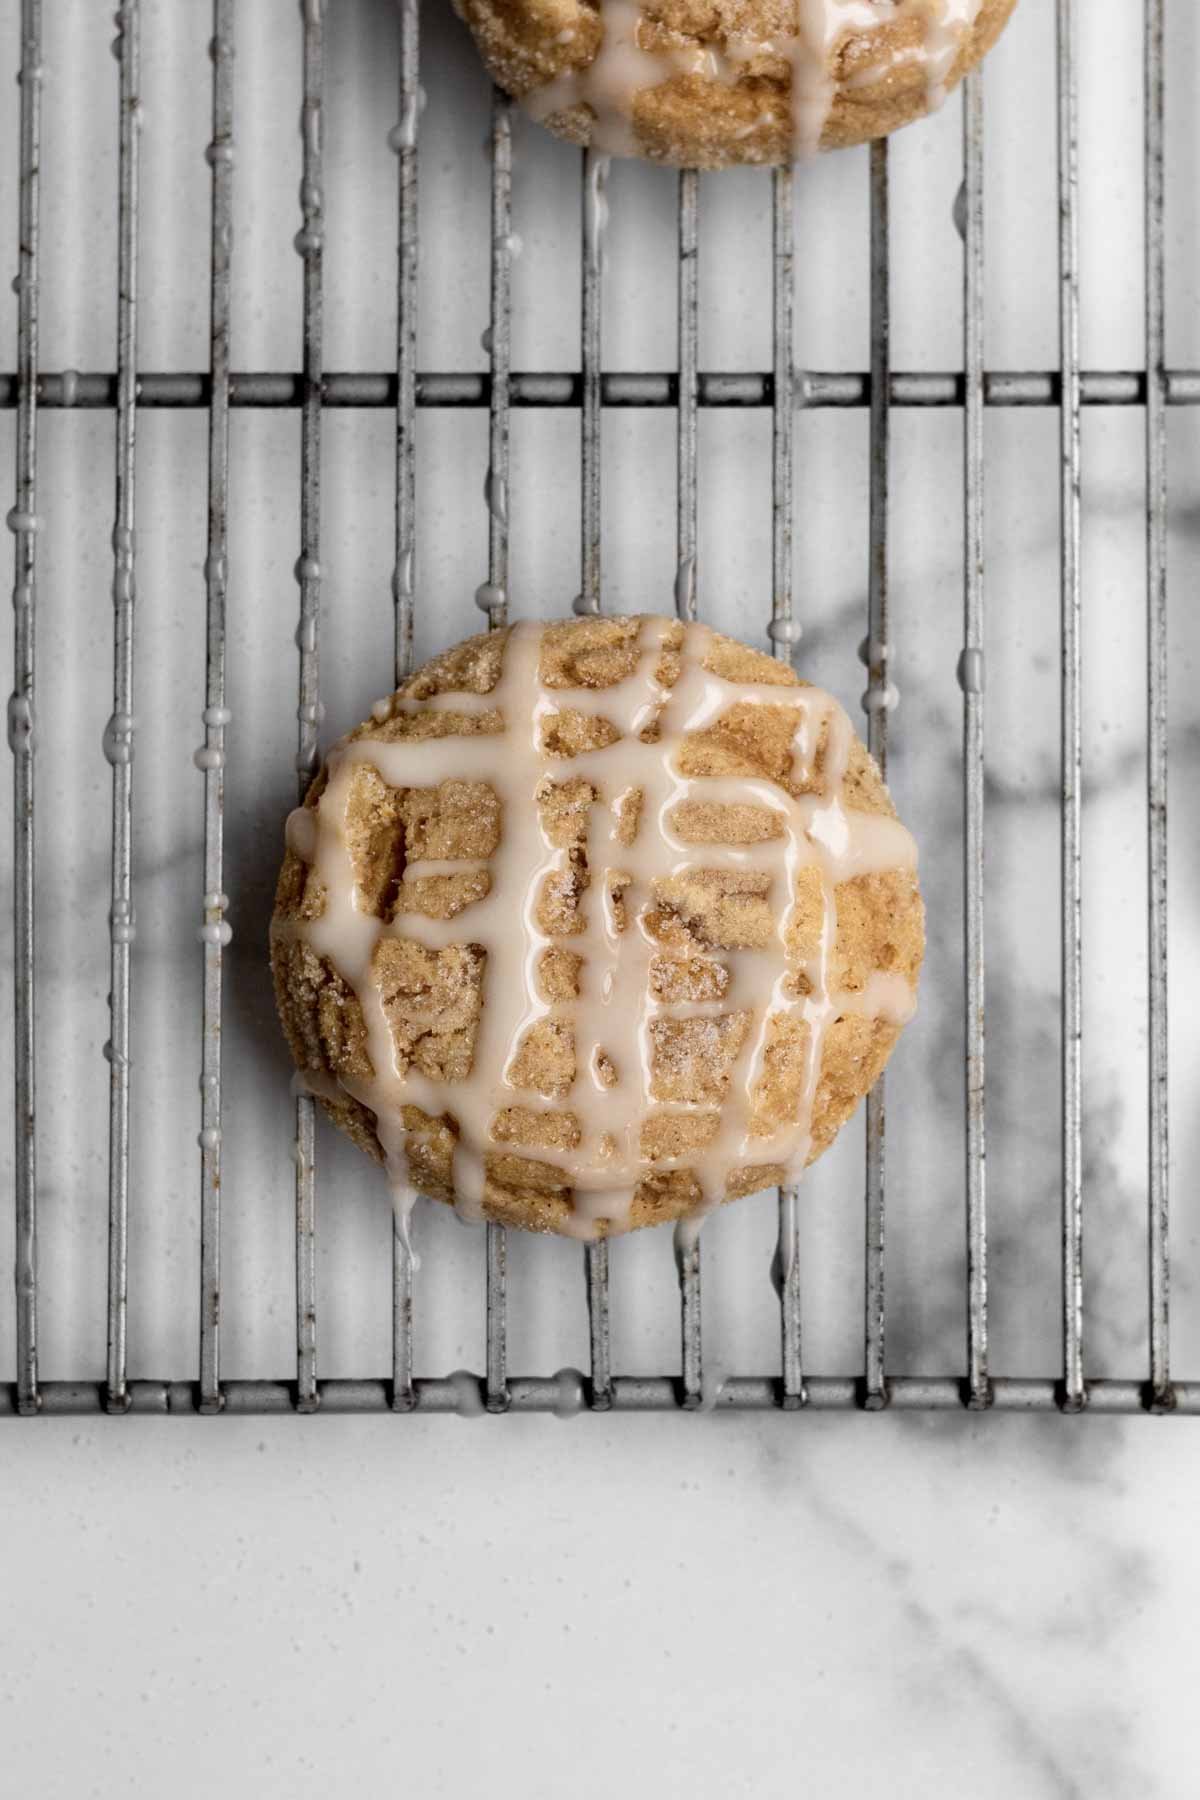 A crosshatch pattern of glaze on a cookie.